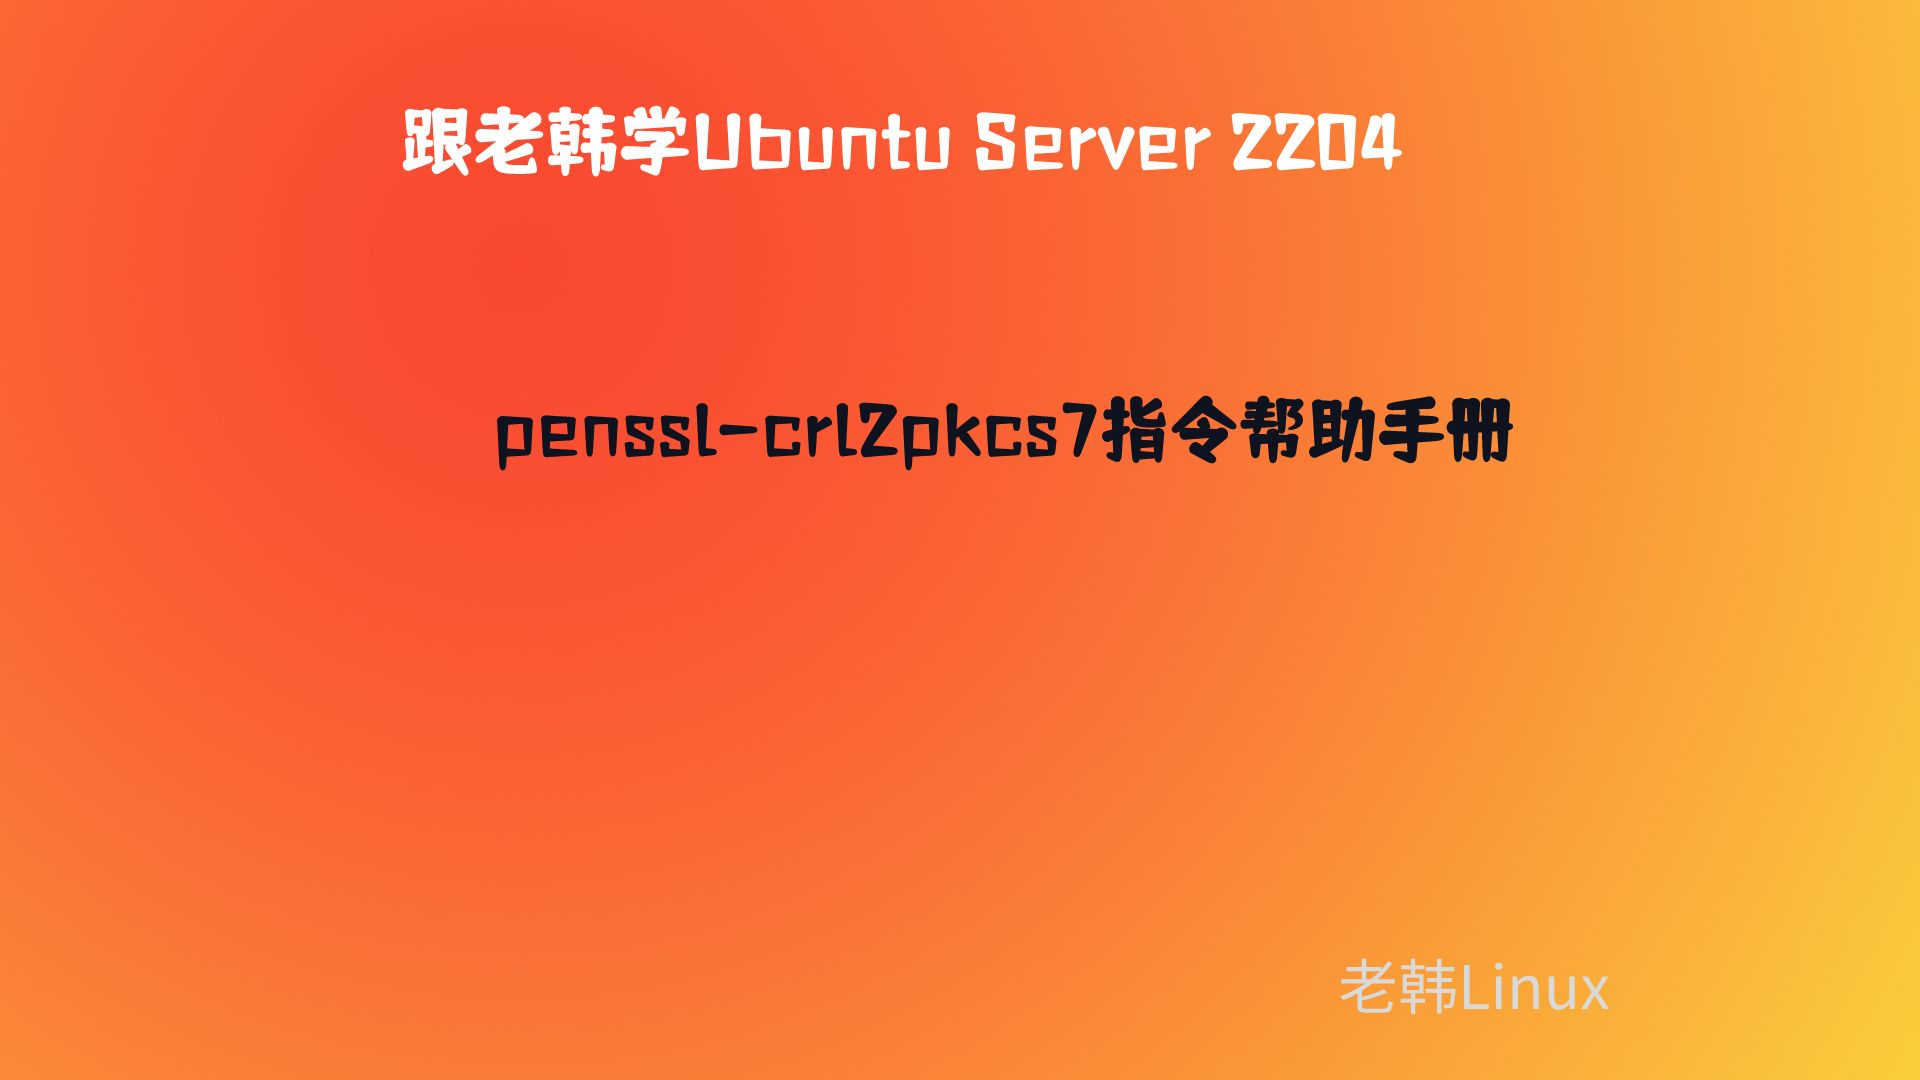 跟老韩学Ubuntu Server 2204-openssl-crl2pkcs7帮助手册